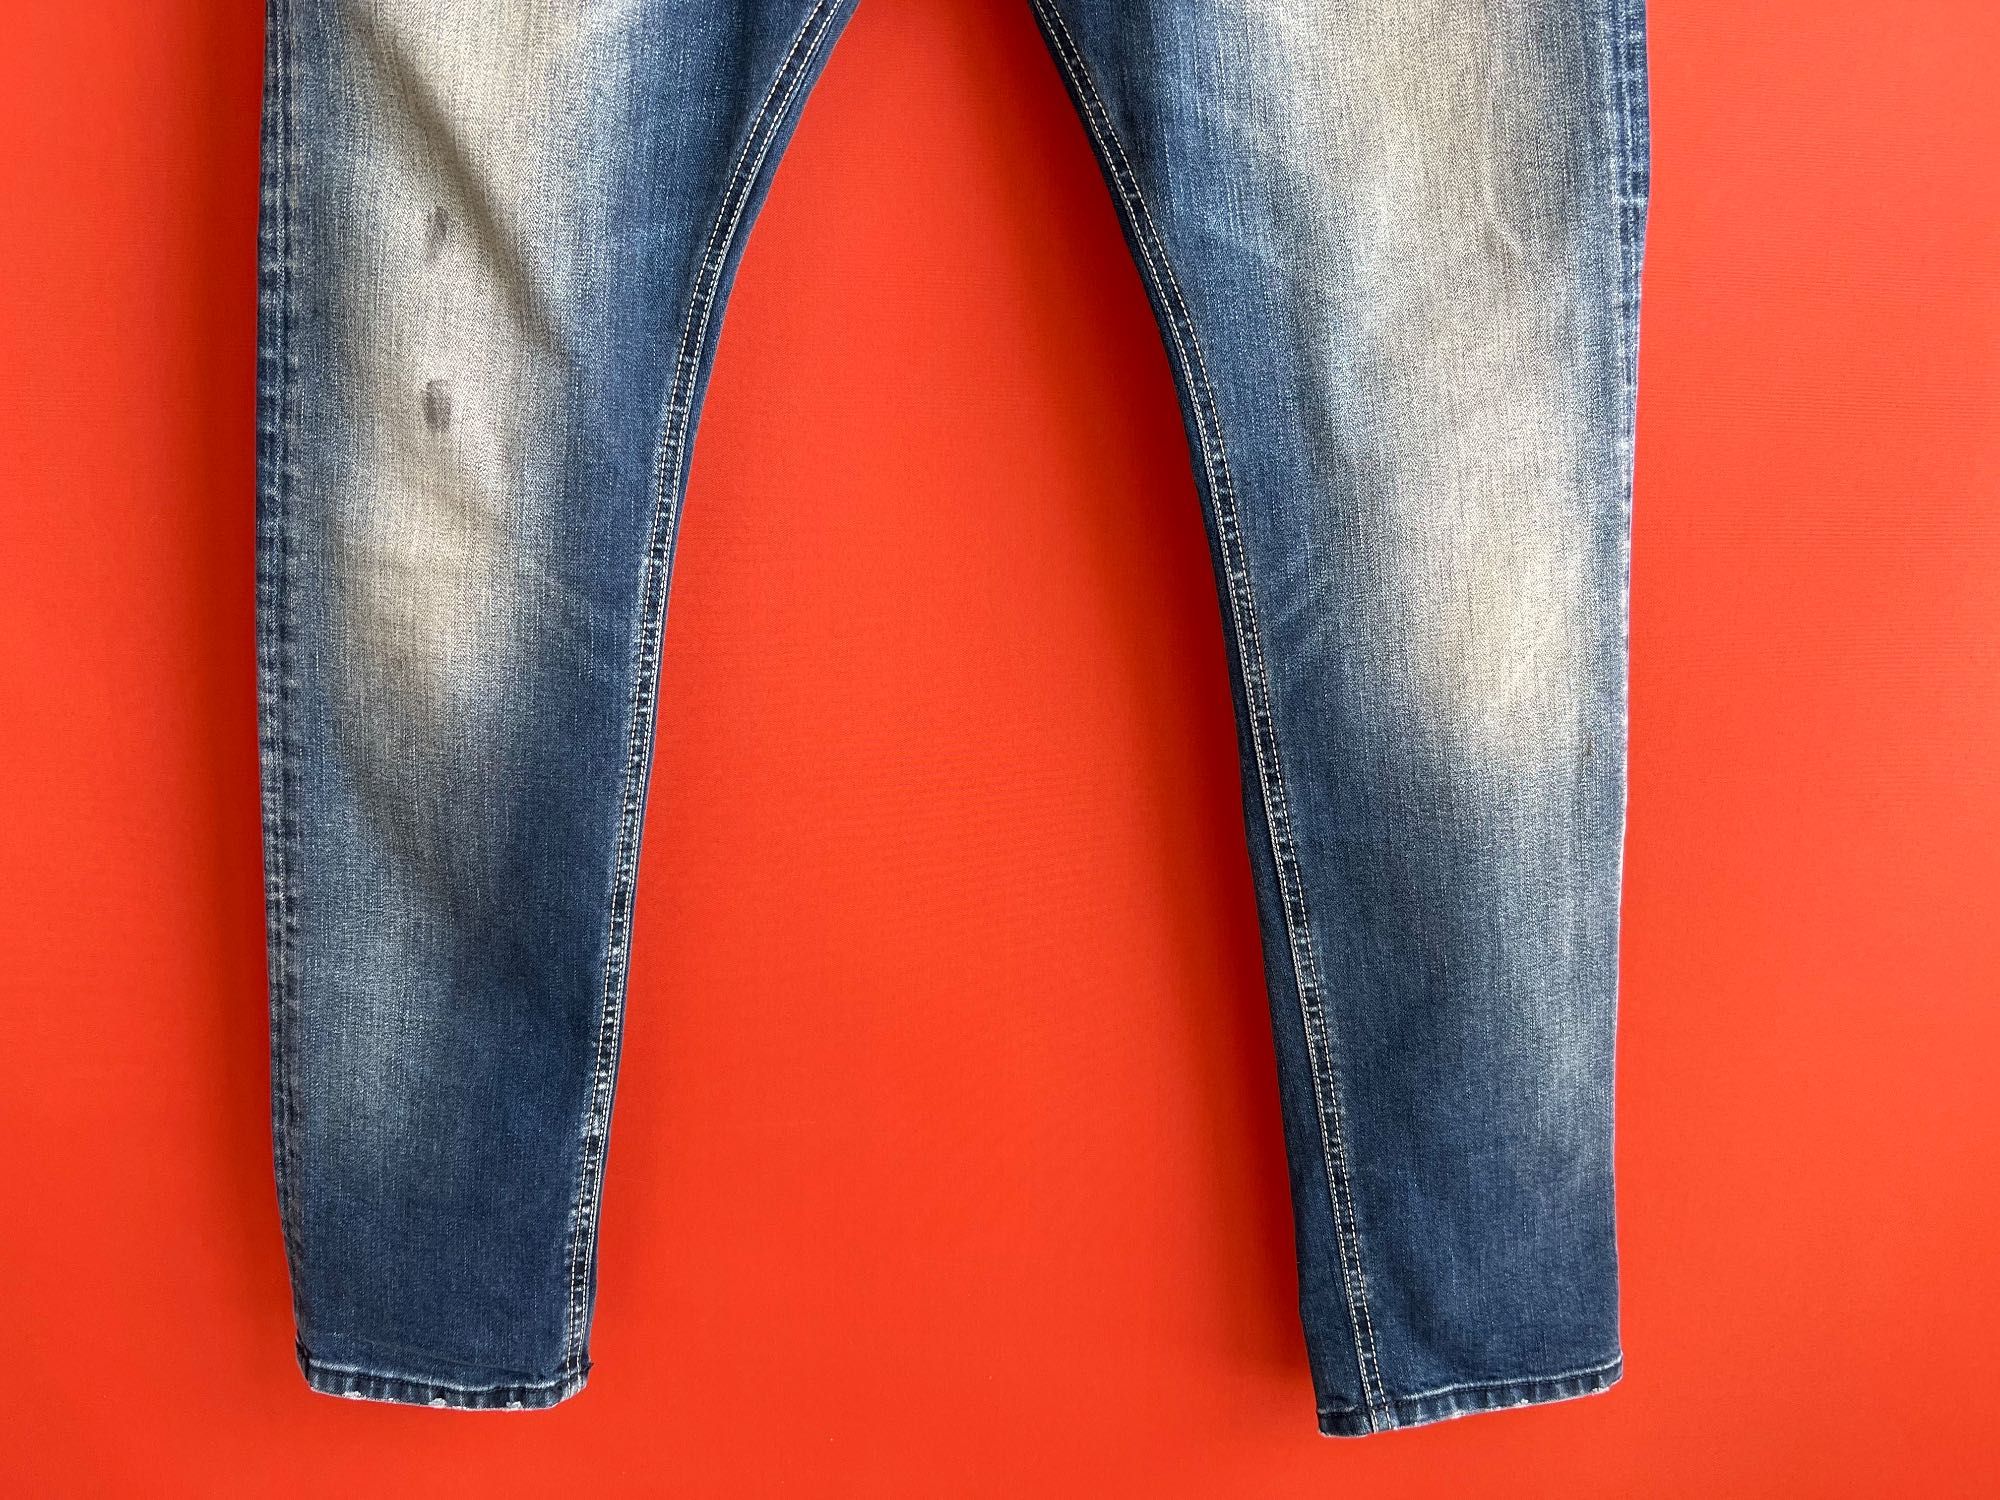 Diesel Tepphar оригинал мужские джинсы штаны размер 32 33 Б У